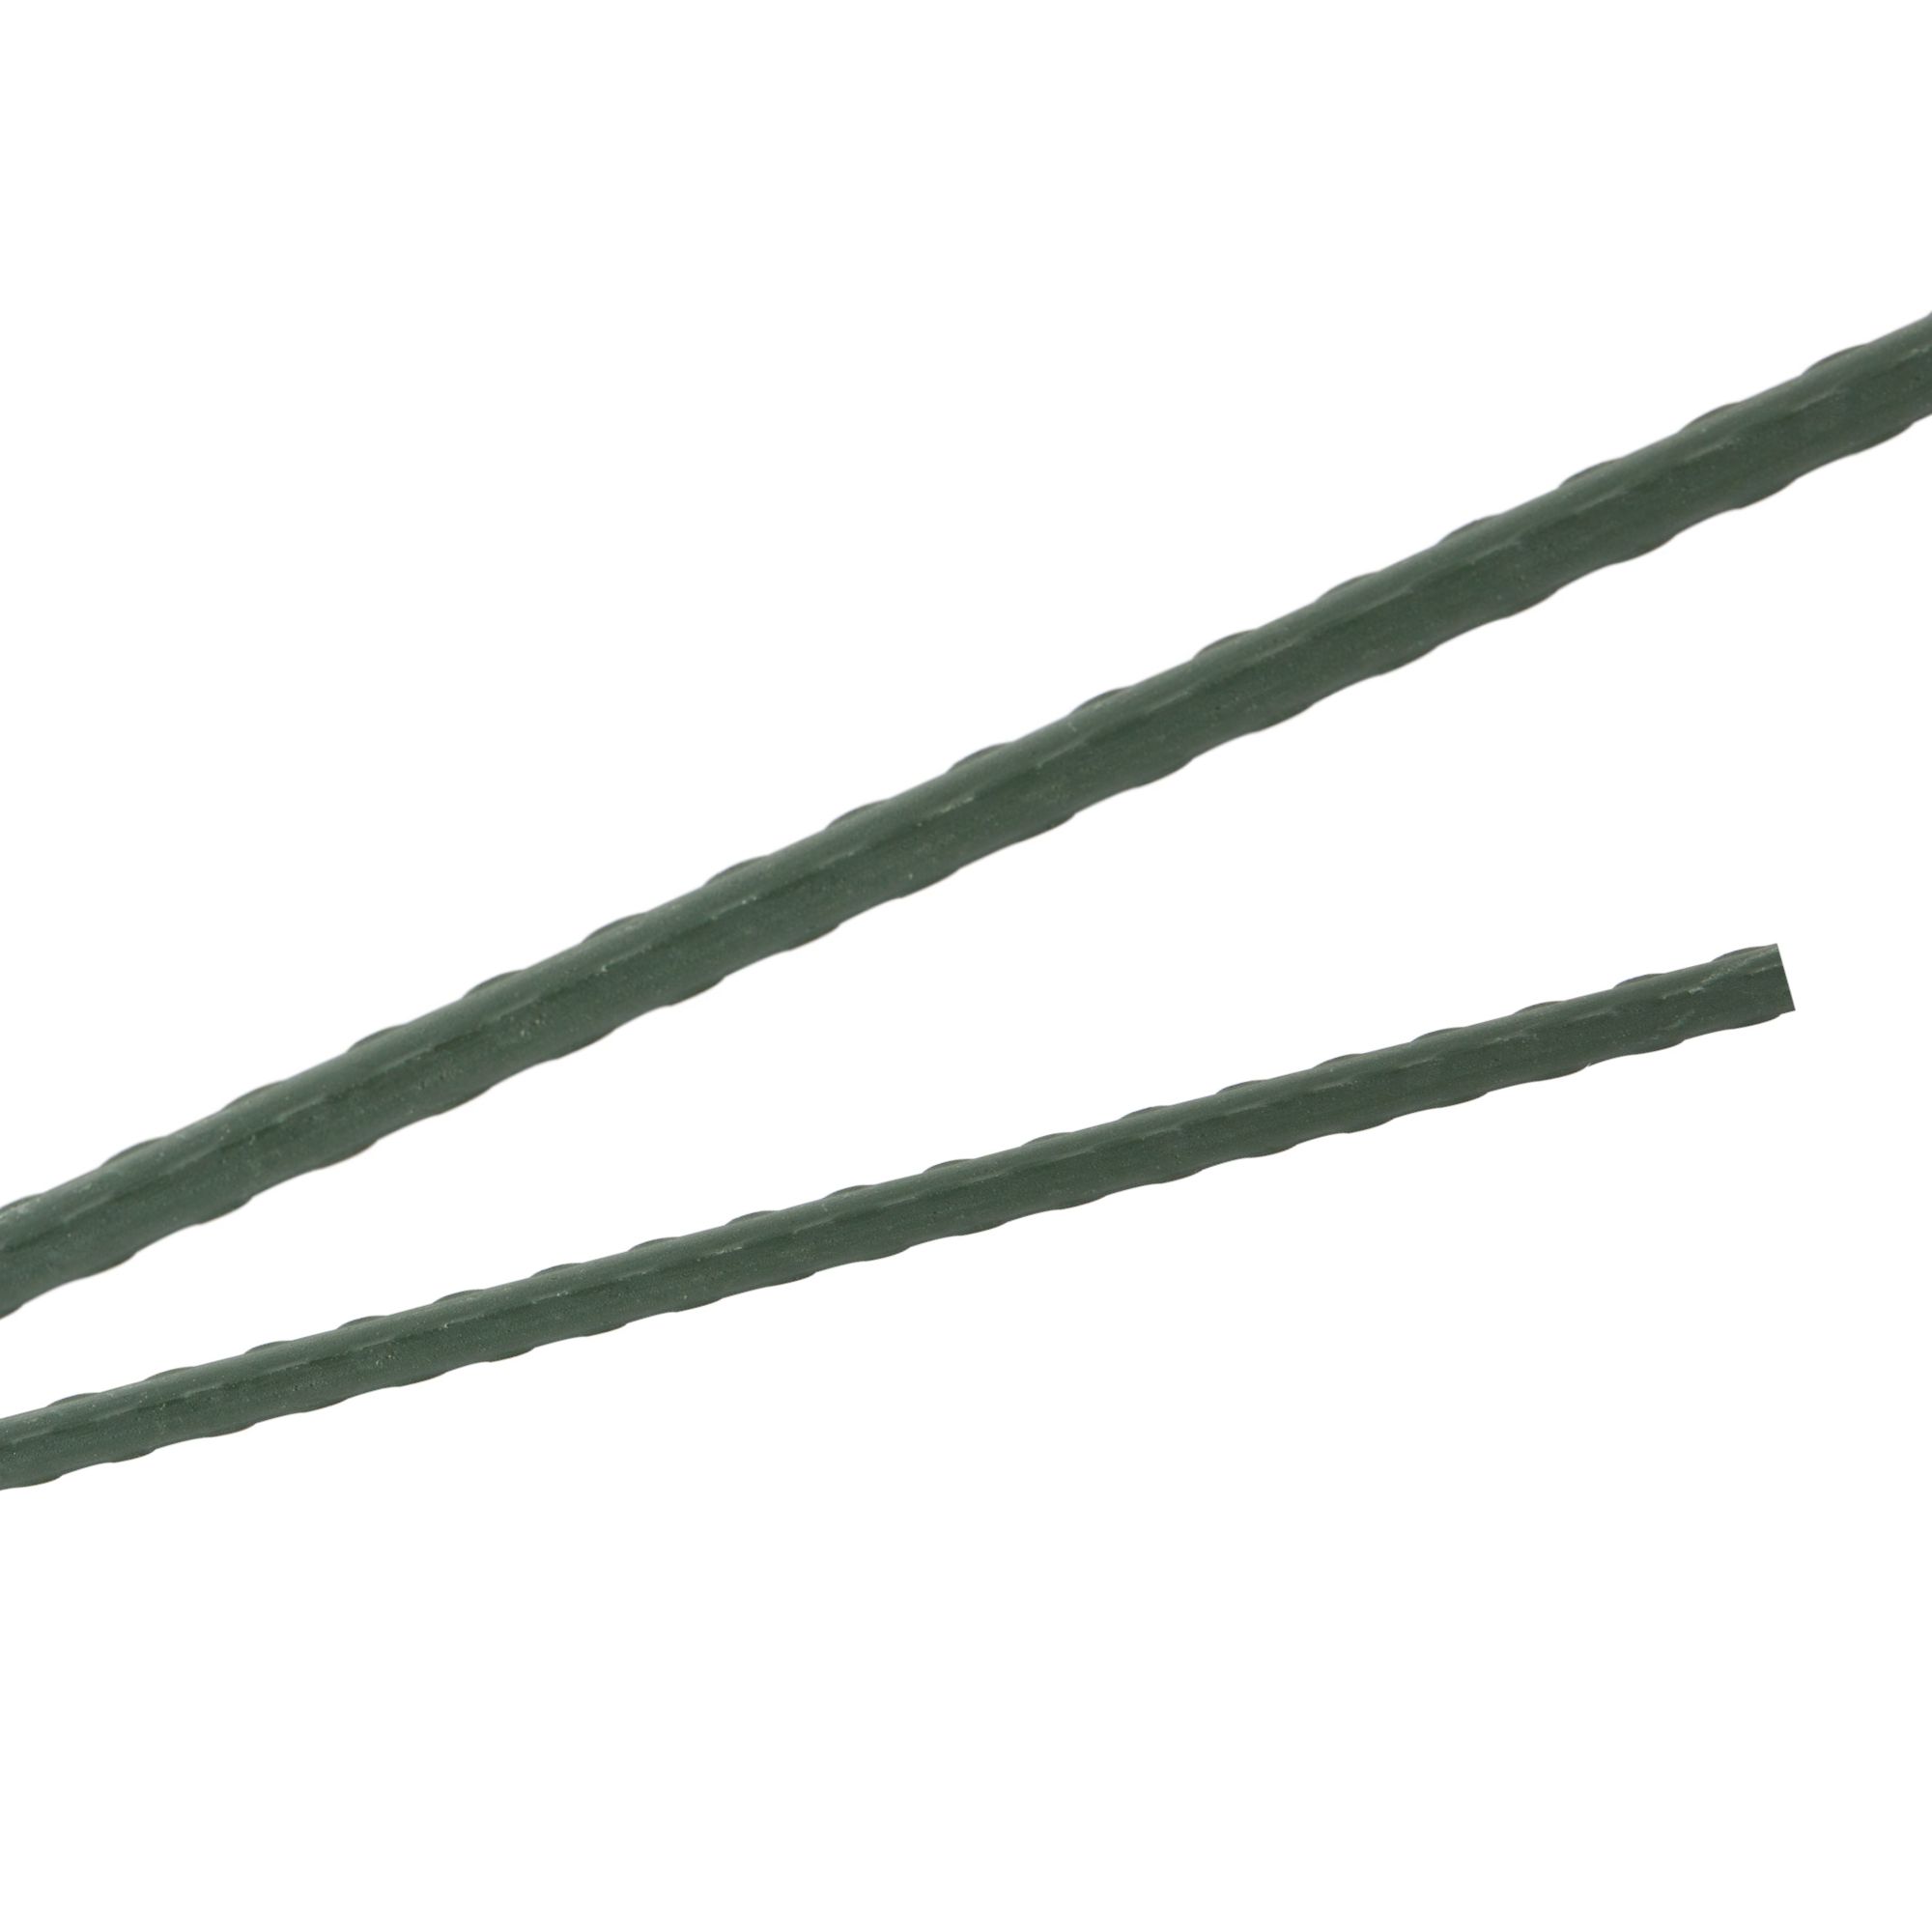 Tyč podpěrná, 16mm, 120cm, kov+PVC, zelená 0.150000 Kg GIGA Sklad20 32013 77